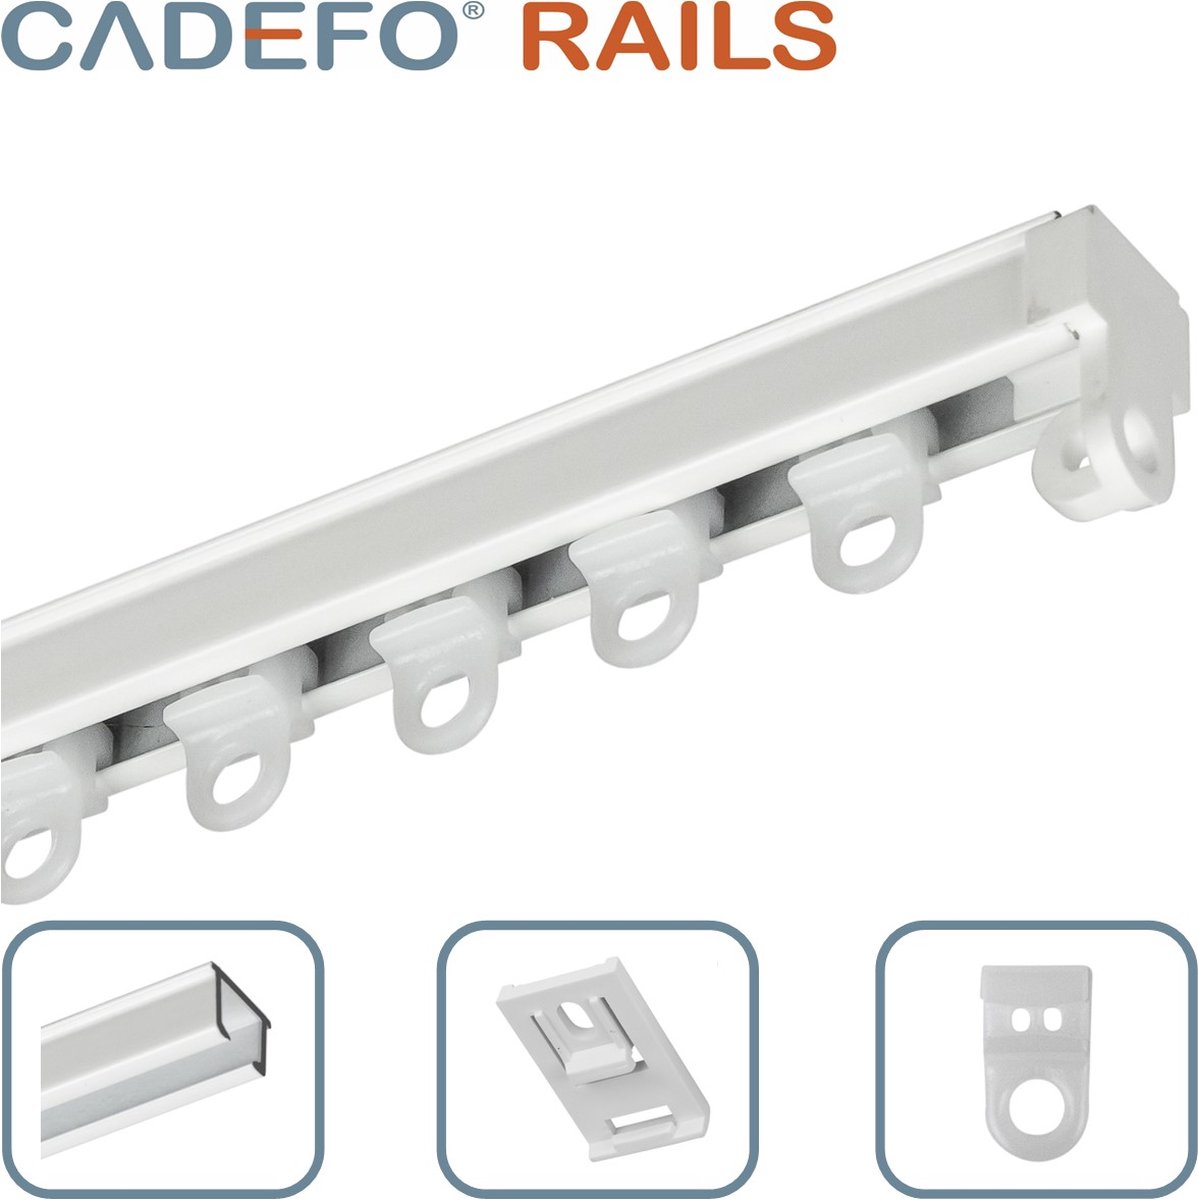 CADEFO RAILS (101 - 150 cm) Gordijnrails - Compleet op maat! - UIT 1 STUK - Leverbaar tot 6 meter - Plafondbevestiging - Lengte 145 cm